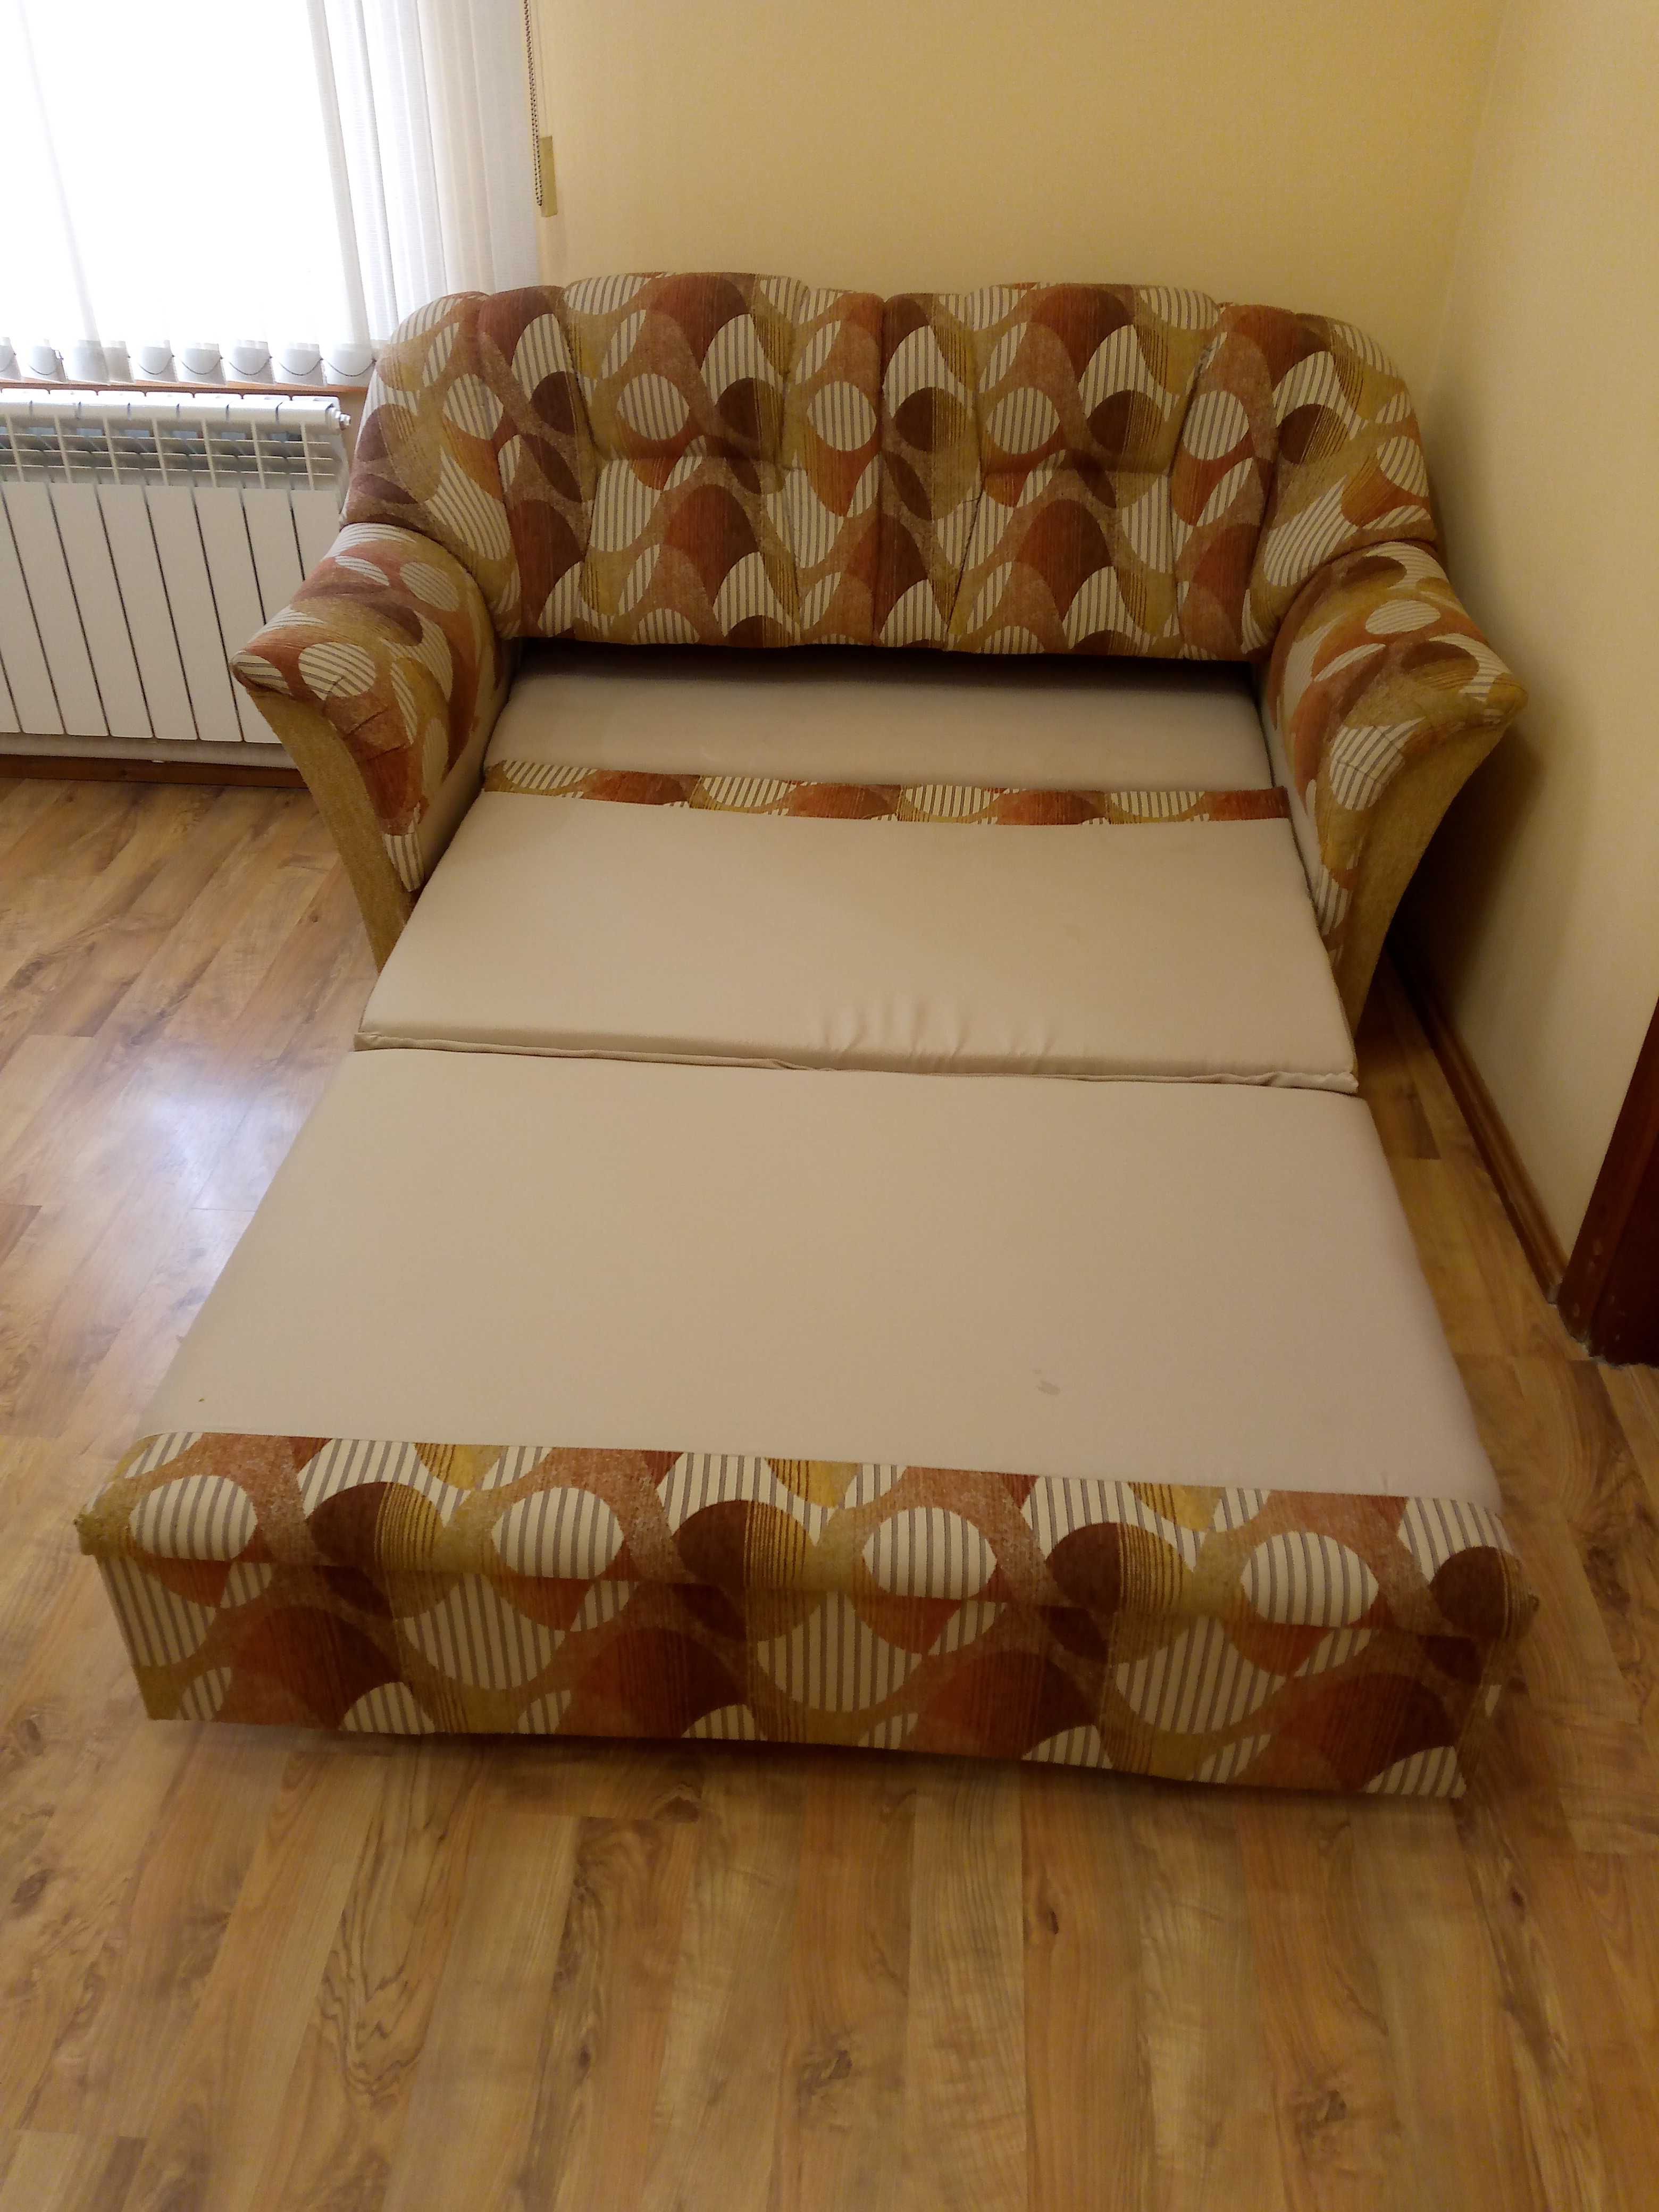 Компактный удобный диван кровать 2 вида.Размер 200х80см и 190х117см